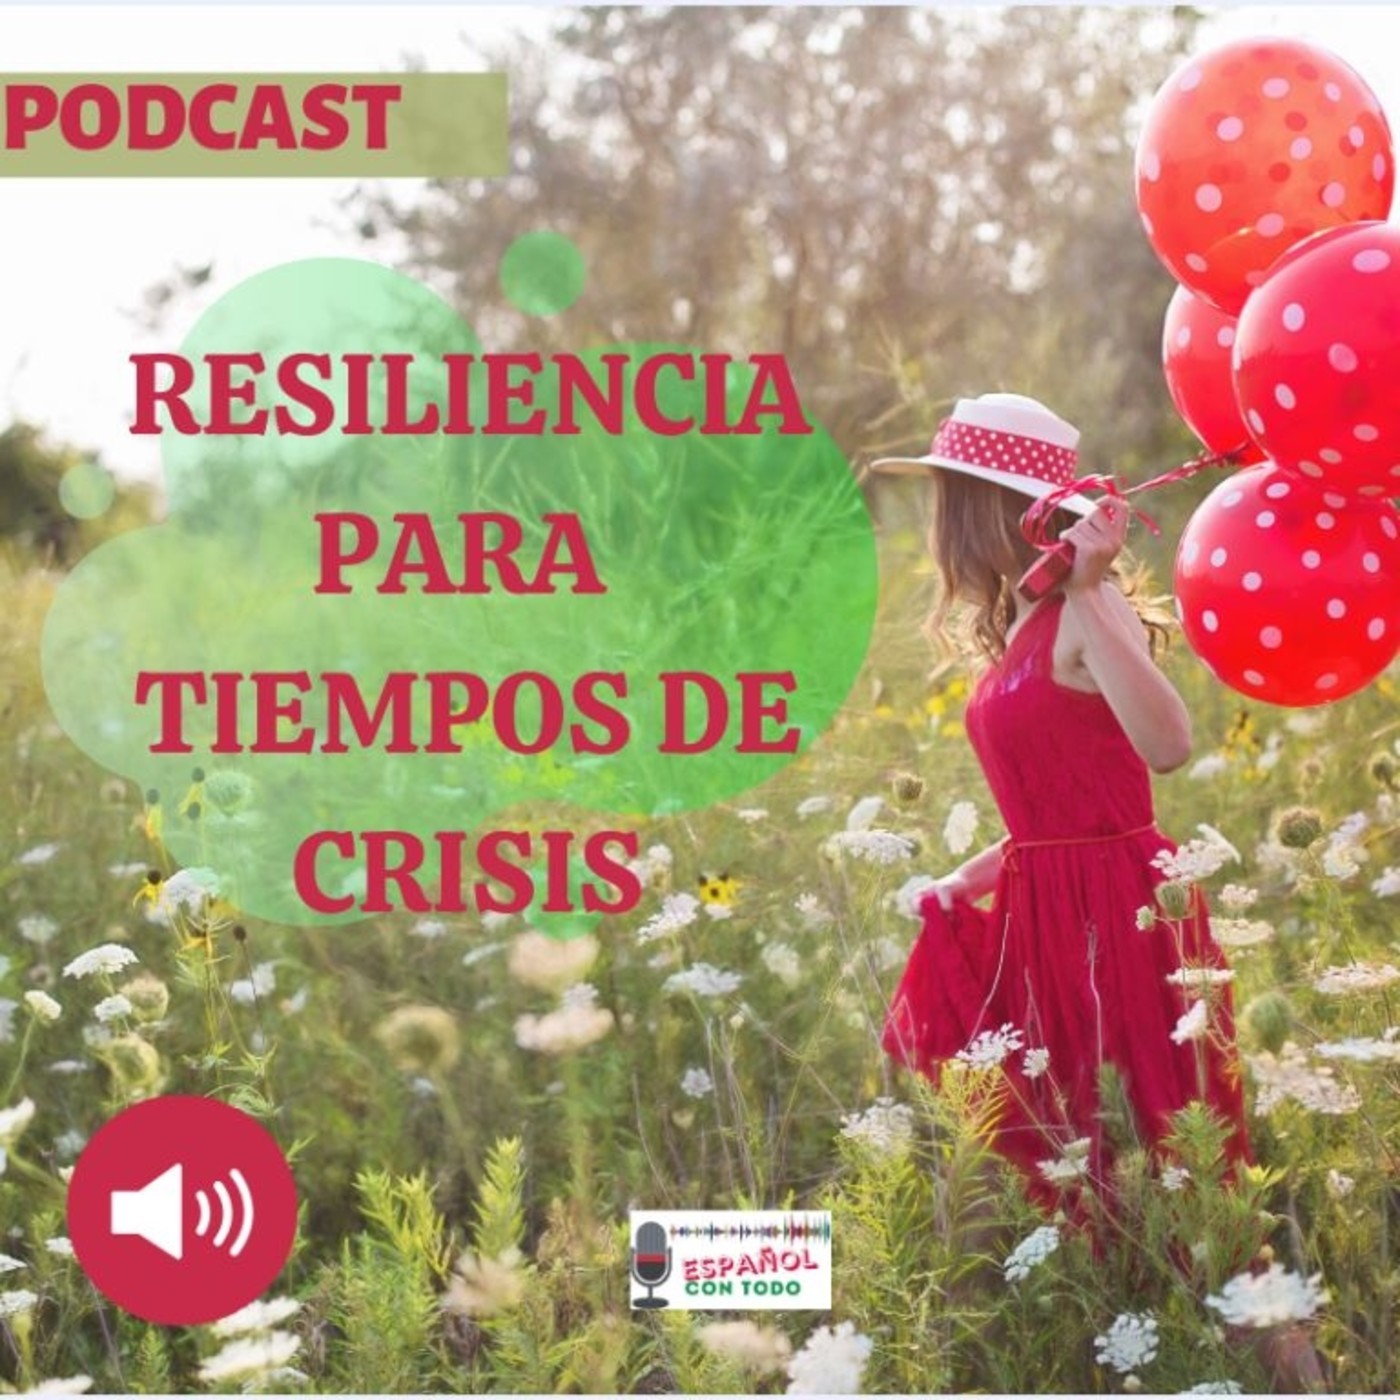 017 - Resiliencia en tiempos de crisis